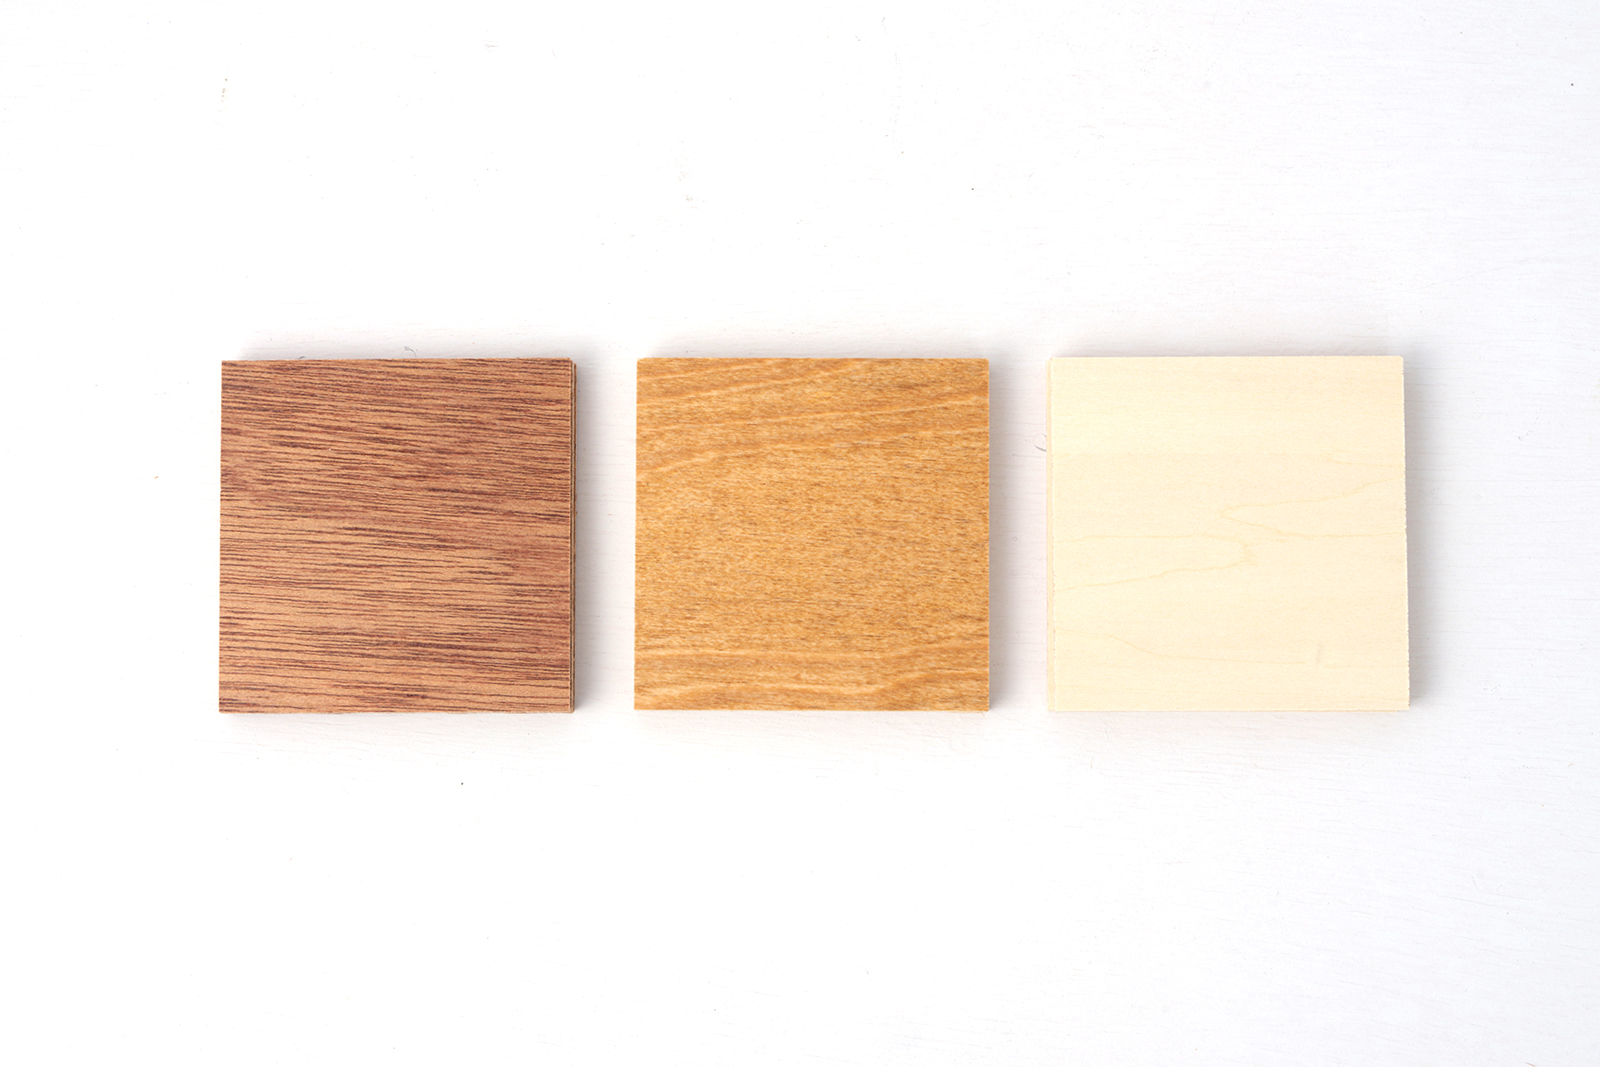 木製ミニマルキッチン ラワン W1200×D550 KB-KC016-11-G183 仕上げは3種類あります。左からラワン・バーチ・シナ。各商品ページをご確認ください